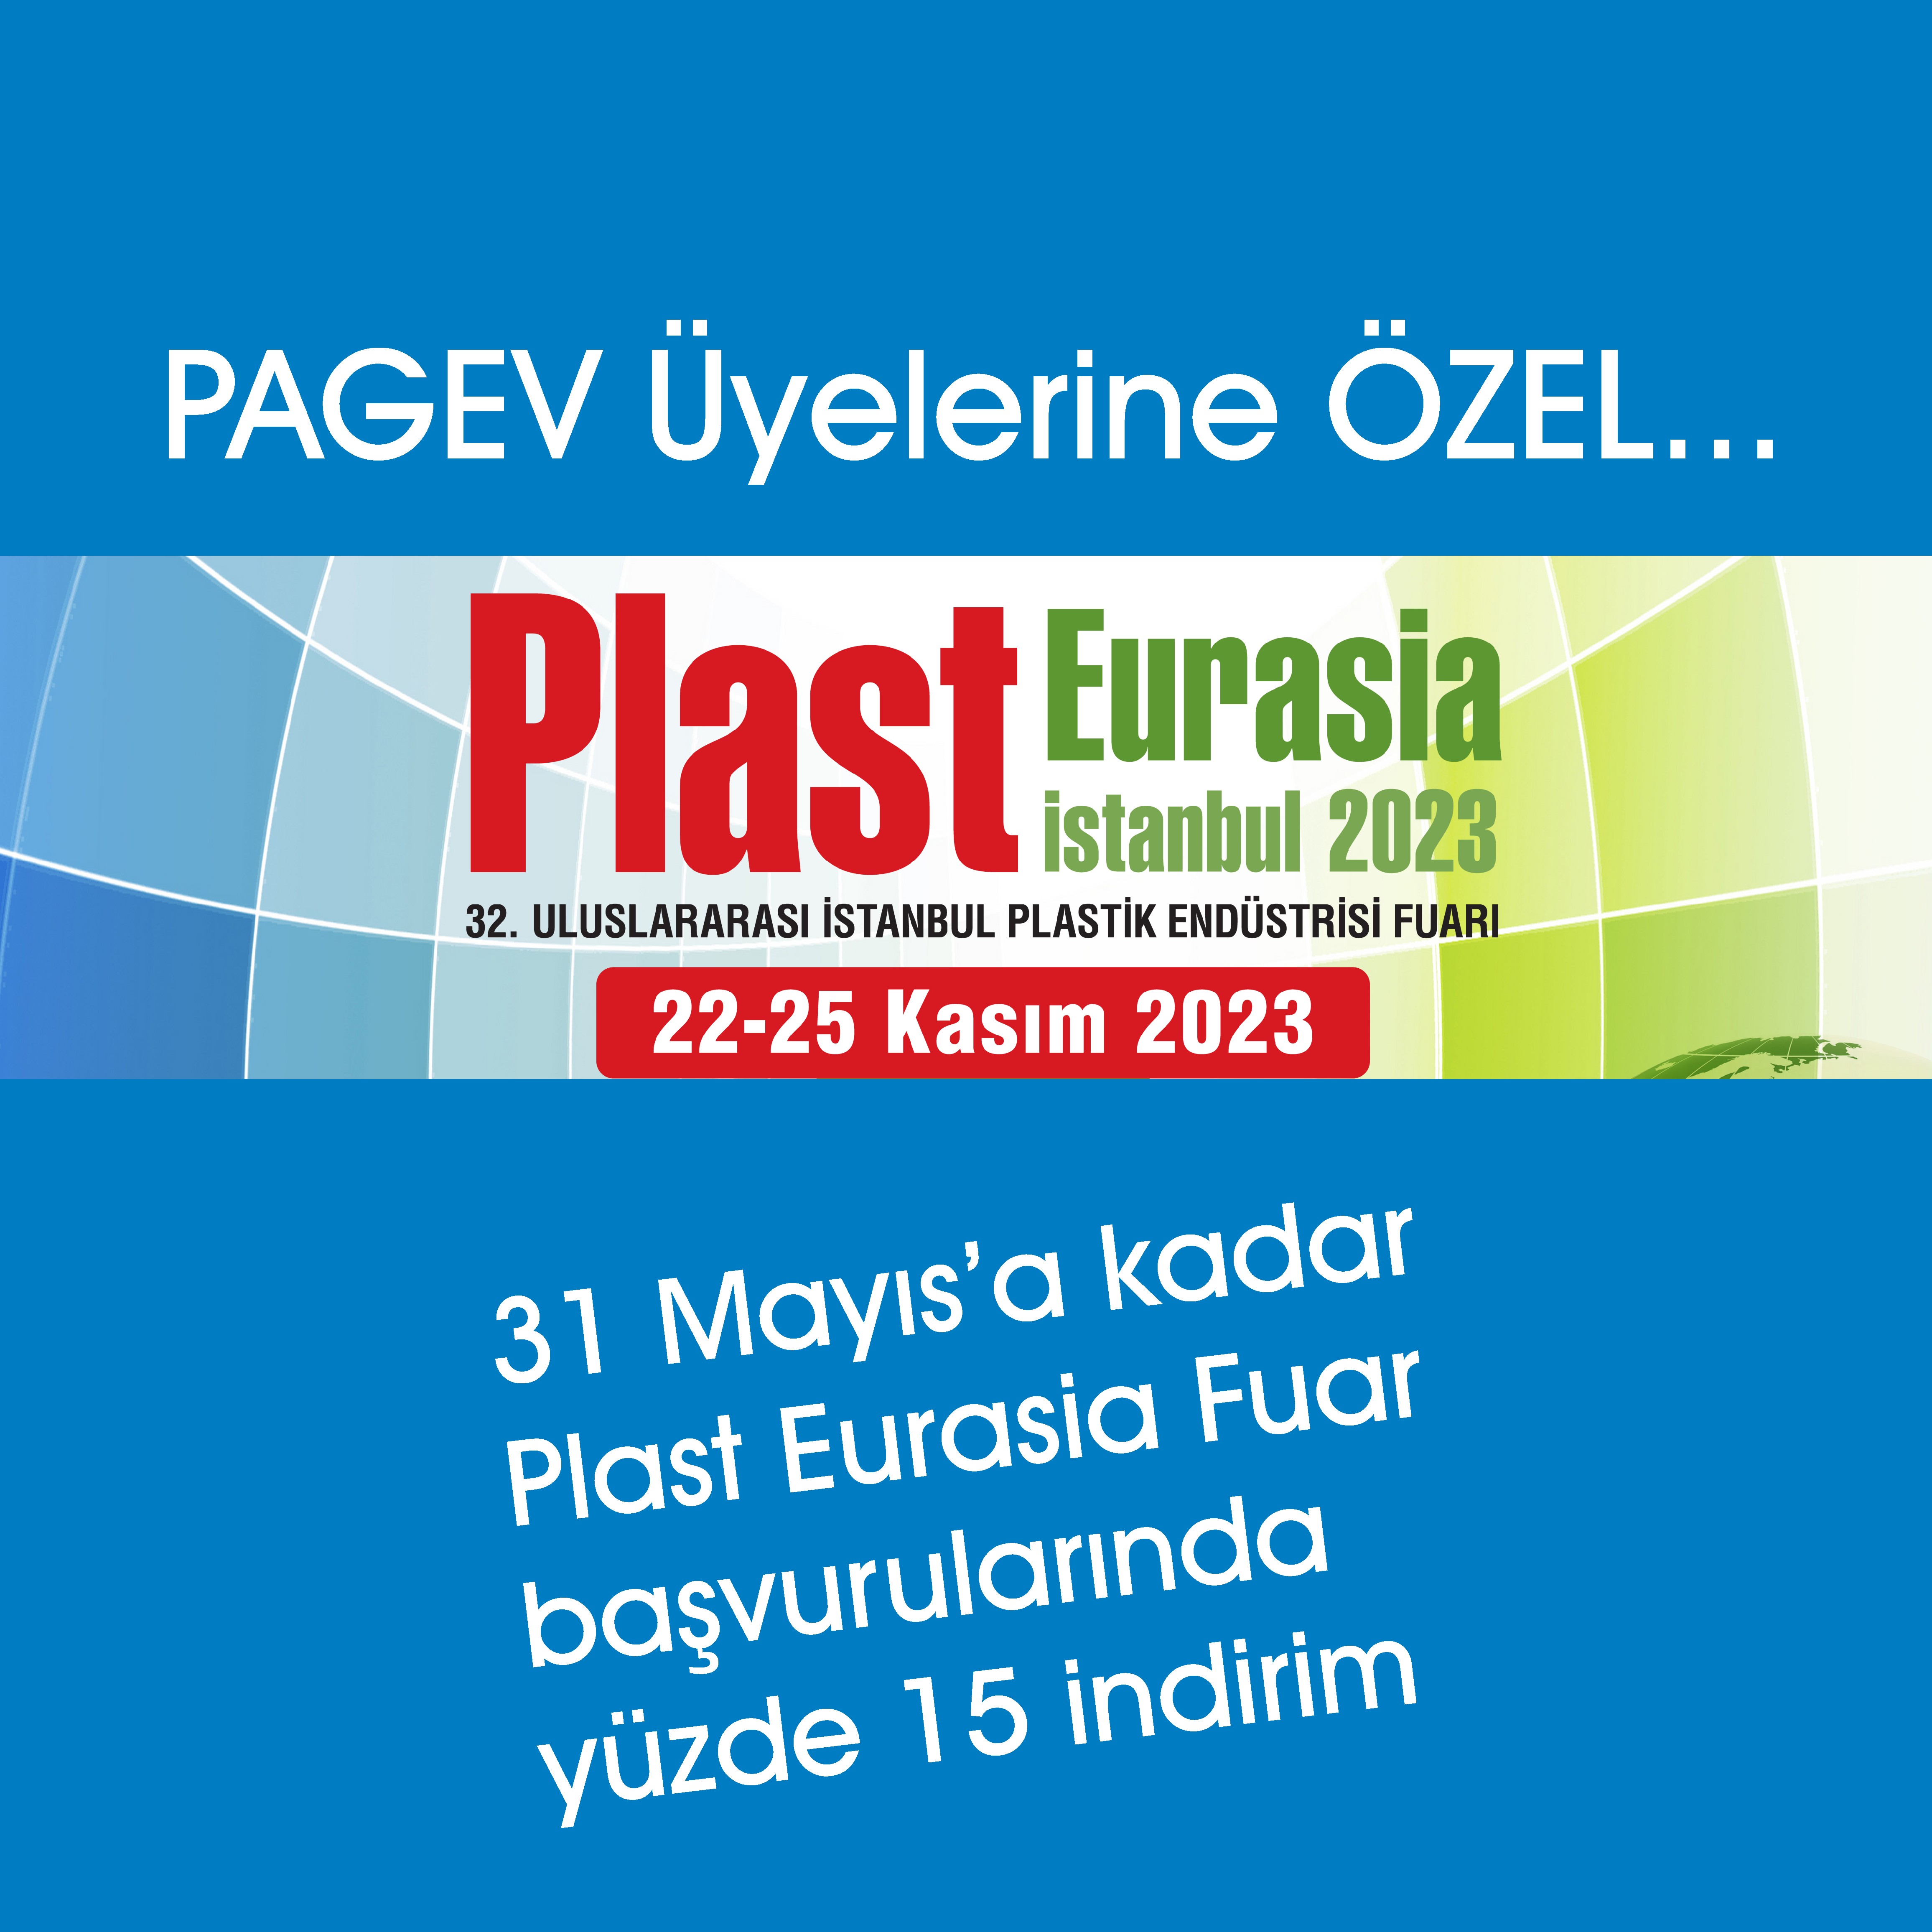 PAGEV üyesi olun 31 Mayıs’a kadar TÜYAP’a yapacağınız Plast Eurasia Fuar başvurunuzda yüzde 15 indirim alın